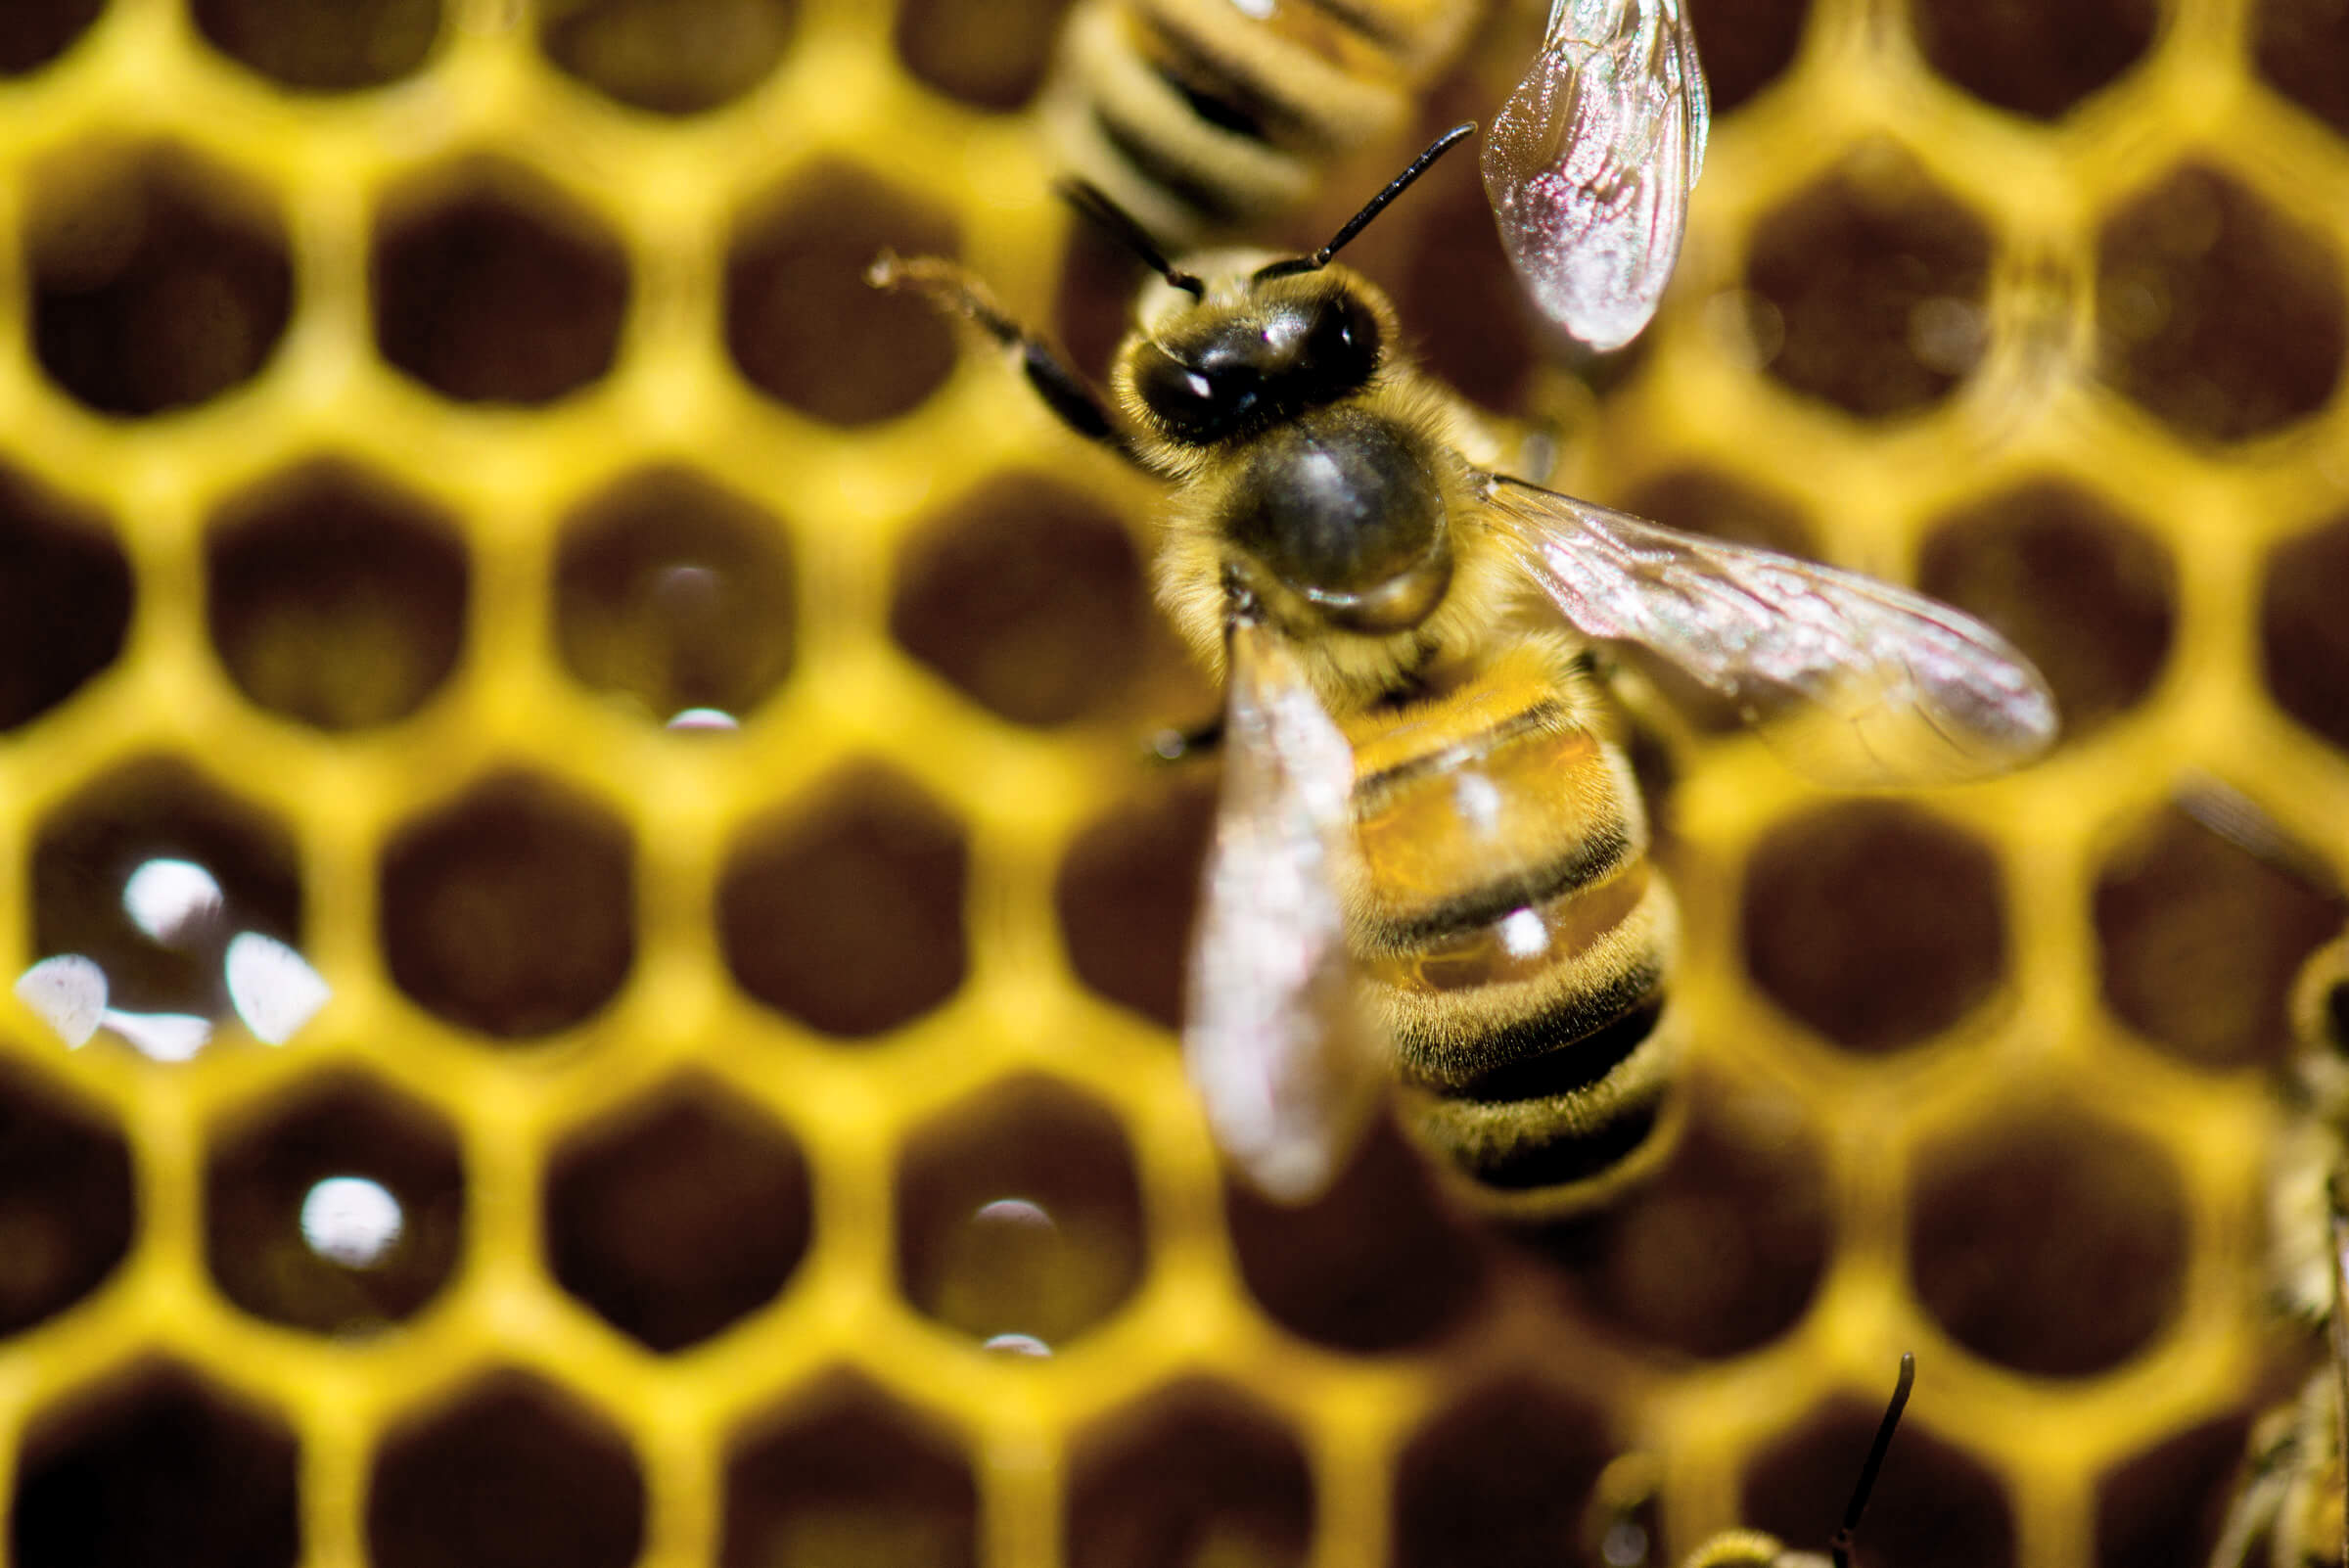 Colapso de la colmena afecta a apicultores de Yucatán